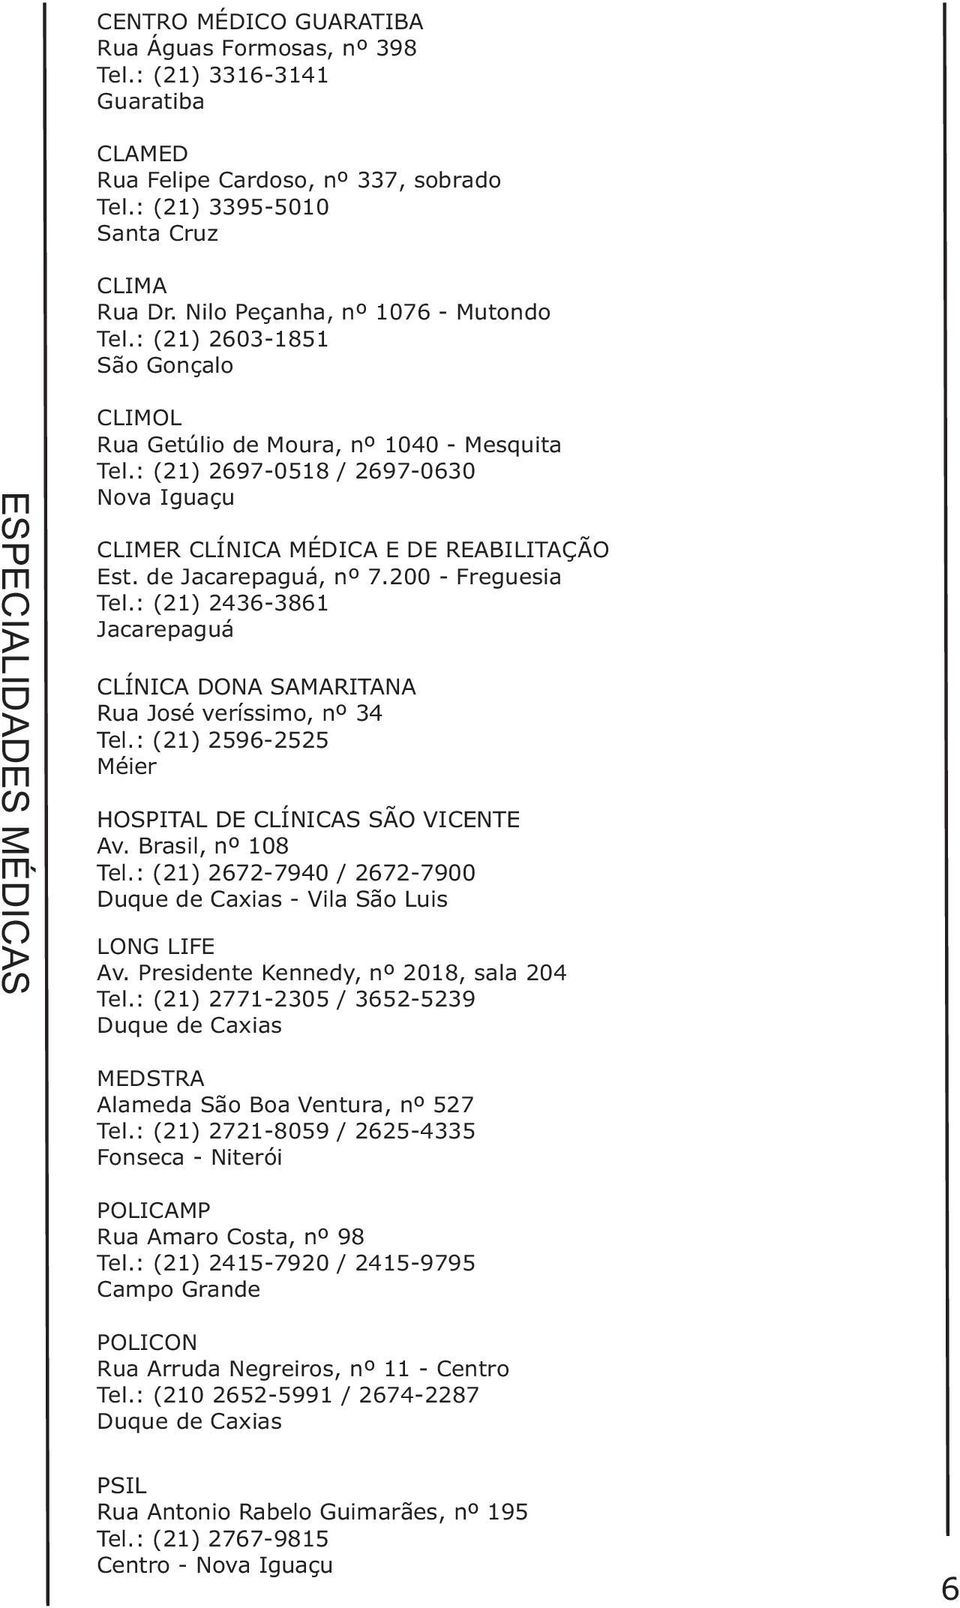 : (21) 2697-0518 / 2697-0630 CLIMER CLÍNICA MÉDICA E DE REABILITAÇÃO Est. de Jacarepaguá, nº 7.200 - Freguesia Tel.: (21) 2436-3861 Jacarepaguá CLÍNICA DONA SAMARITANA Rua José veríssimo, nº 34 Tel.